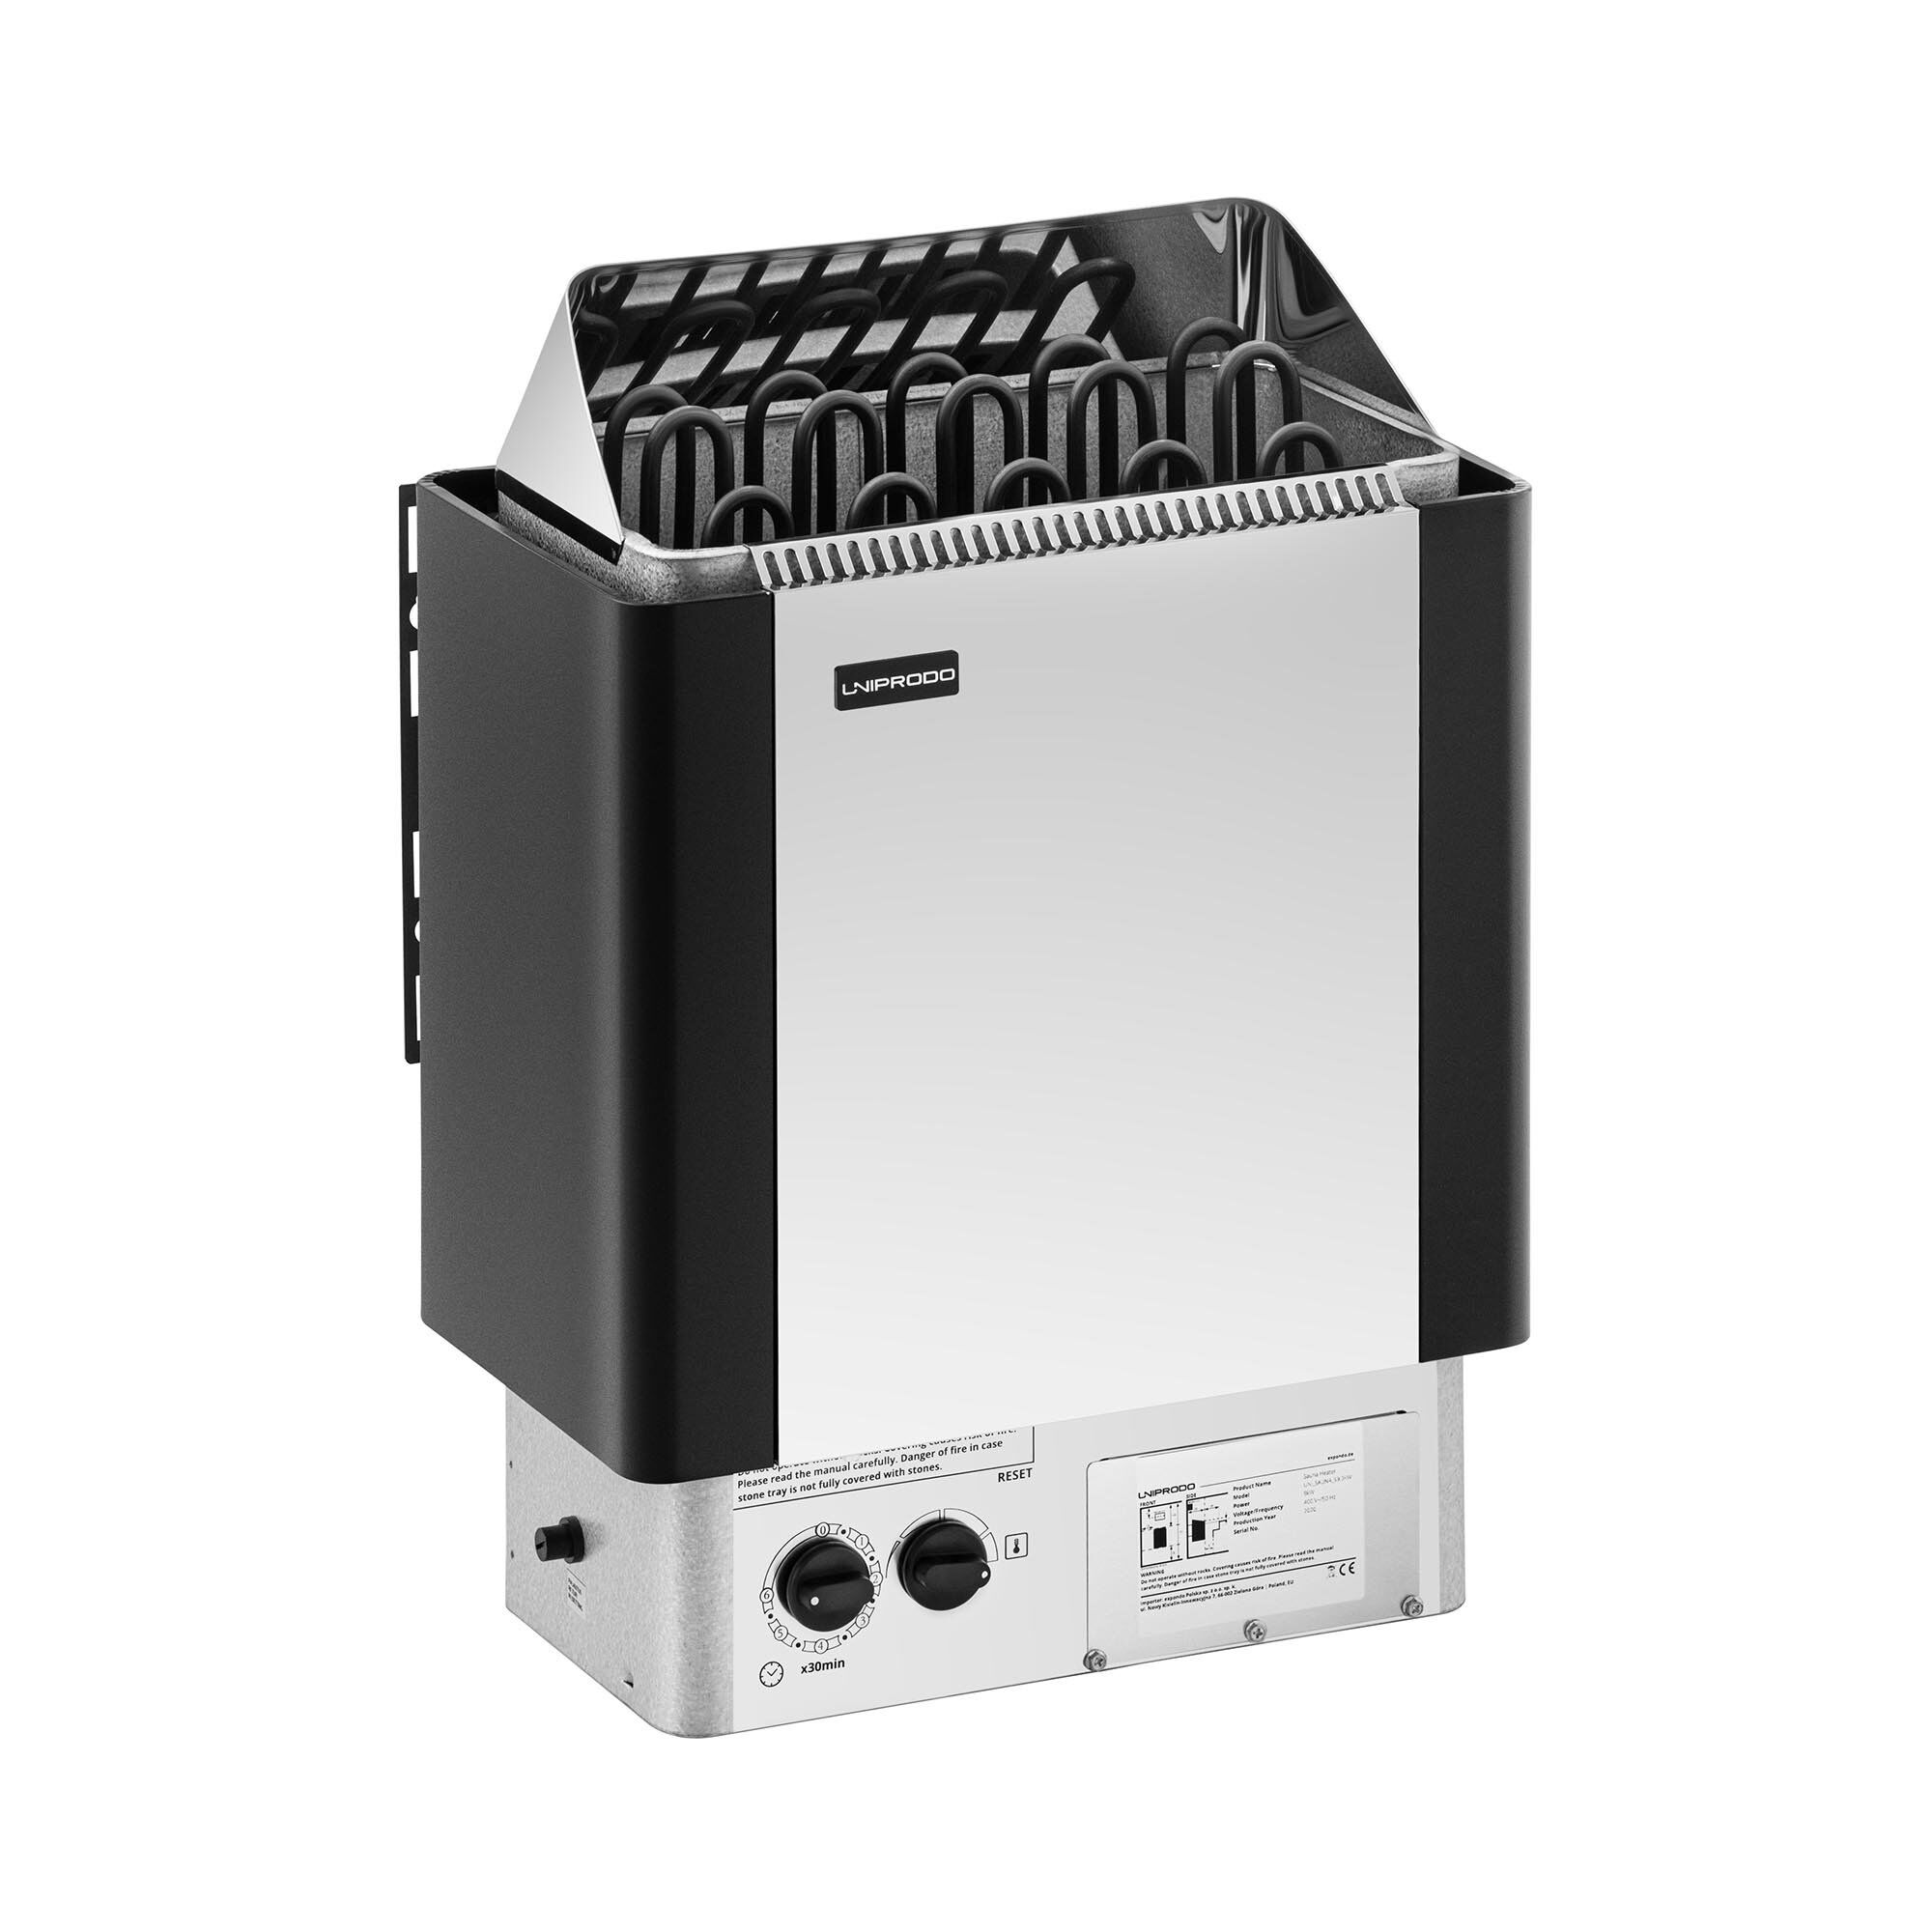 Uniprodo Saunakachel - 9 kW - 30 tot 110 ° C - incl. bedieningspaneel UNI_SAUNA_S9.0KW